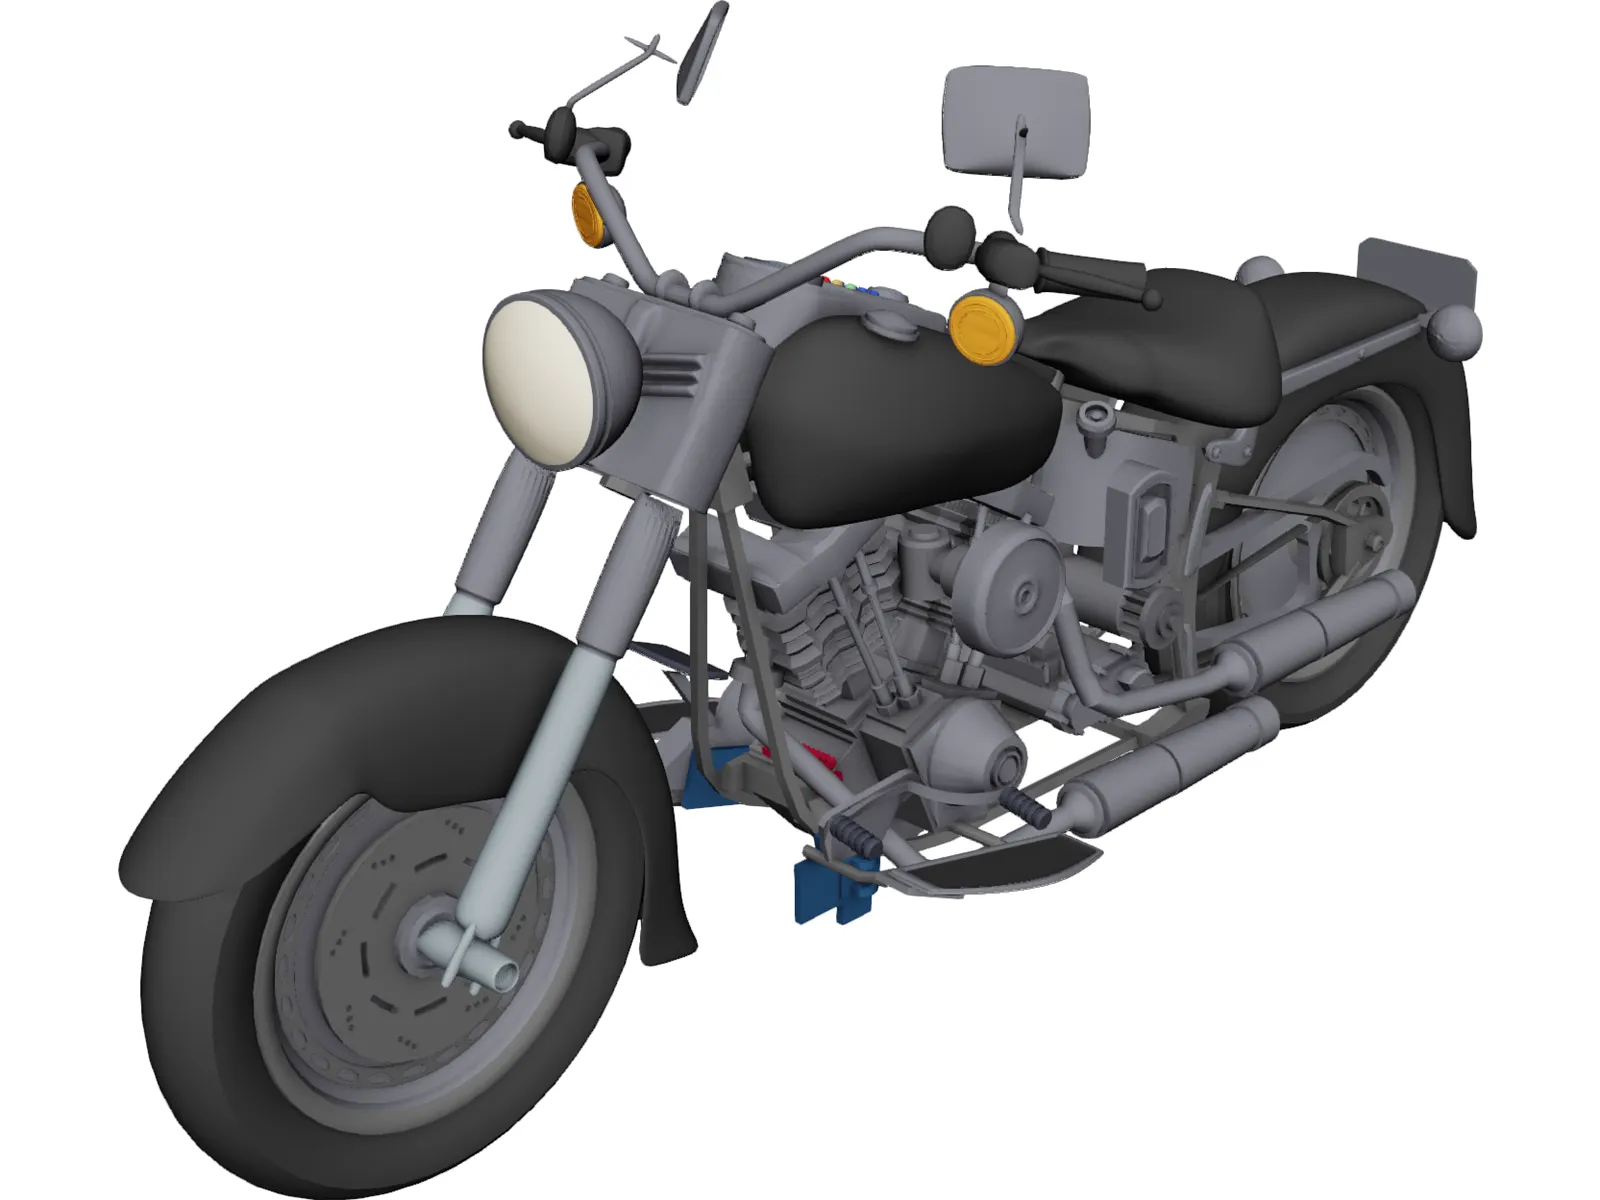 Harley-Davidson Fatboy 3D Model